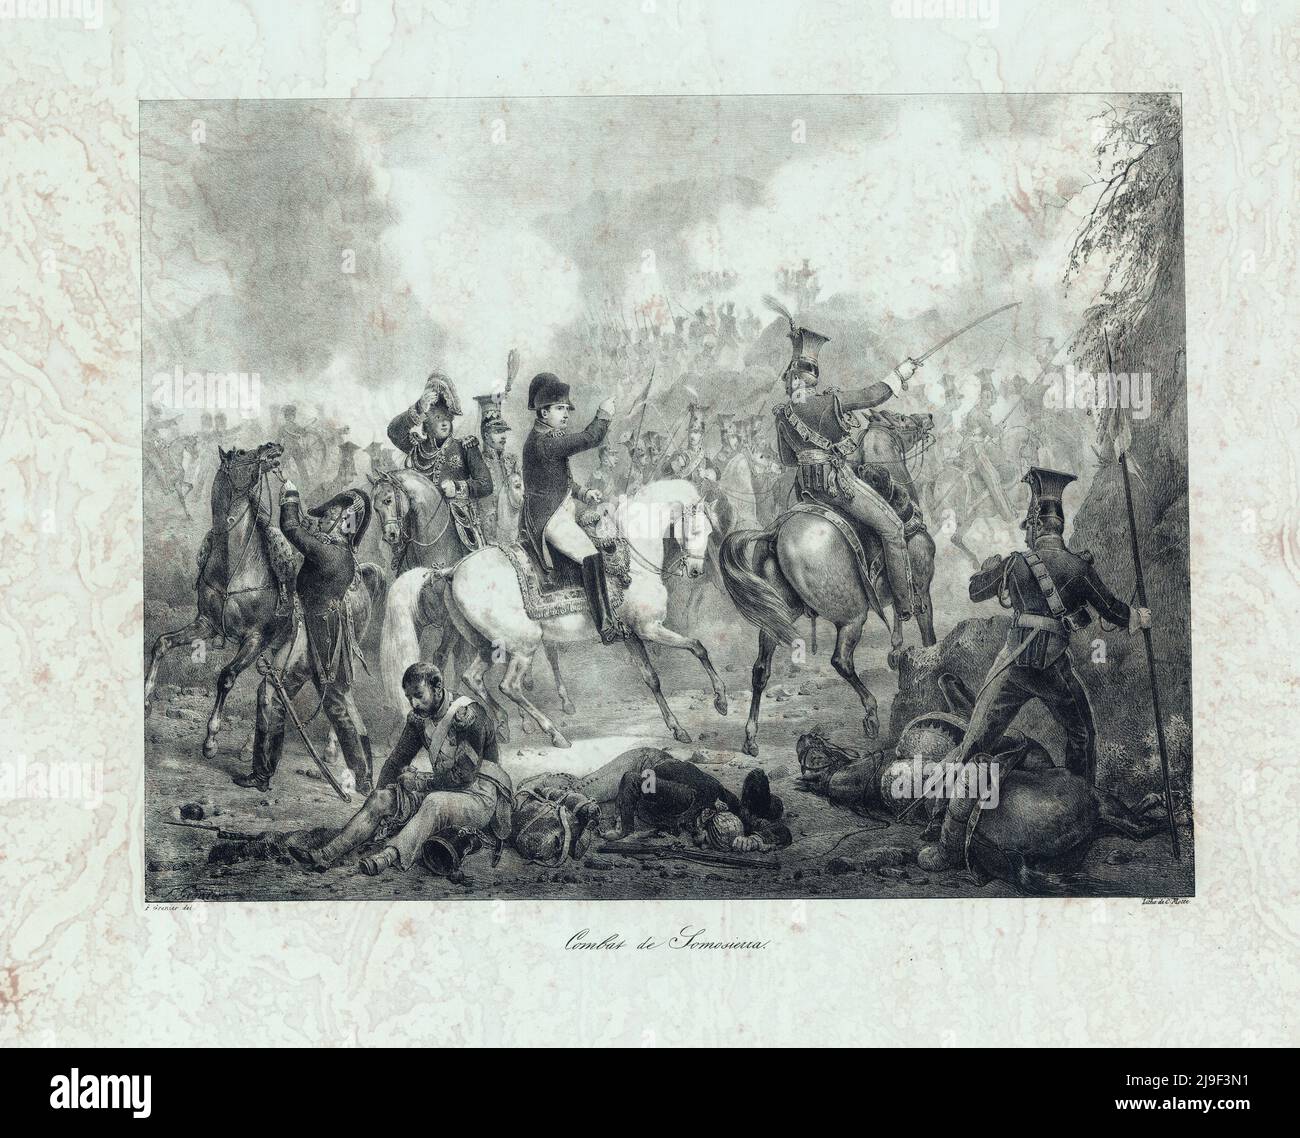 Grabado de la Batalla de Somosierra. Guerras napoleónicas. 1821-1836, por François Grenier (1793-1867). La Batalla de Somosierra tuvo lugar el 30 de noviembre Foto de stock